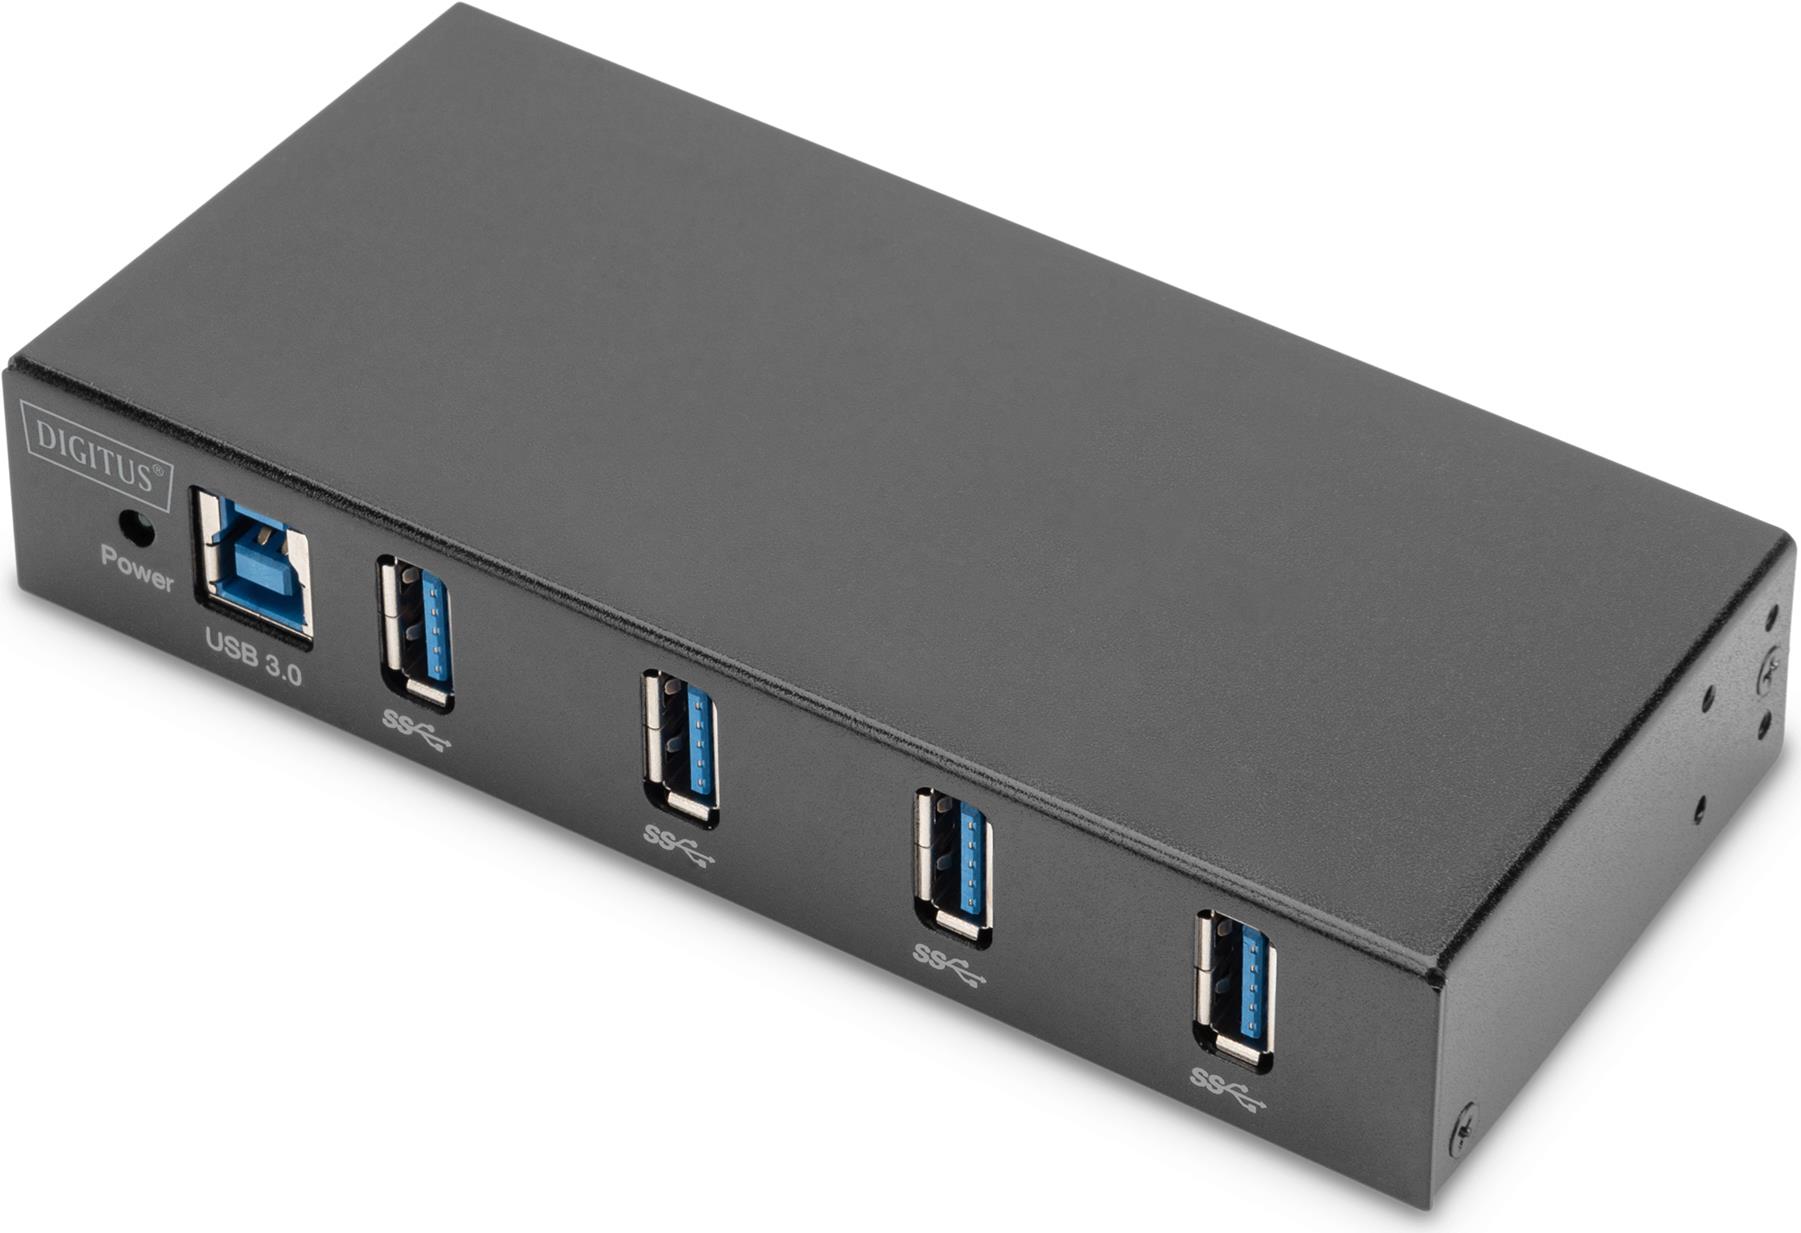 Digitus USB 3.0 Hub, 4-Port, Industrial Line. Hostschnittstelle: USB 3.2 Gen 1 (3.1 Gen 1) Type-B, Hub-Schnittstellen: USB 3.2 Gen 1 (3.1 Gen 1) Type-A. Datenübertragungsrate: 5000 Mbit/s, Produktfarbe: Schwarz, Gehäusematerial: Metall. Netzteiltyp: Gleichstrom, Stromverbrauch (max.): 18 W, Eingangsspannung: 9 - 24 V. Breite: 69 mm, Tiefe: 139 mm, Höhe: 25 mm. Menge pro Packung: 1 Stück(e), Verpackungsbreite: 187 mm, Verpackungstiefe: 140 mm (DA-70257) von Digitus